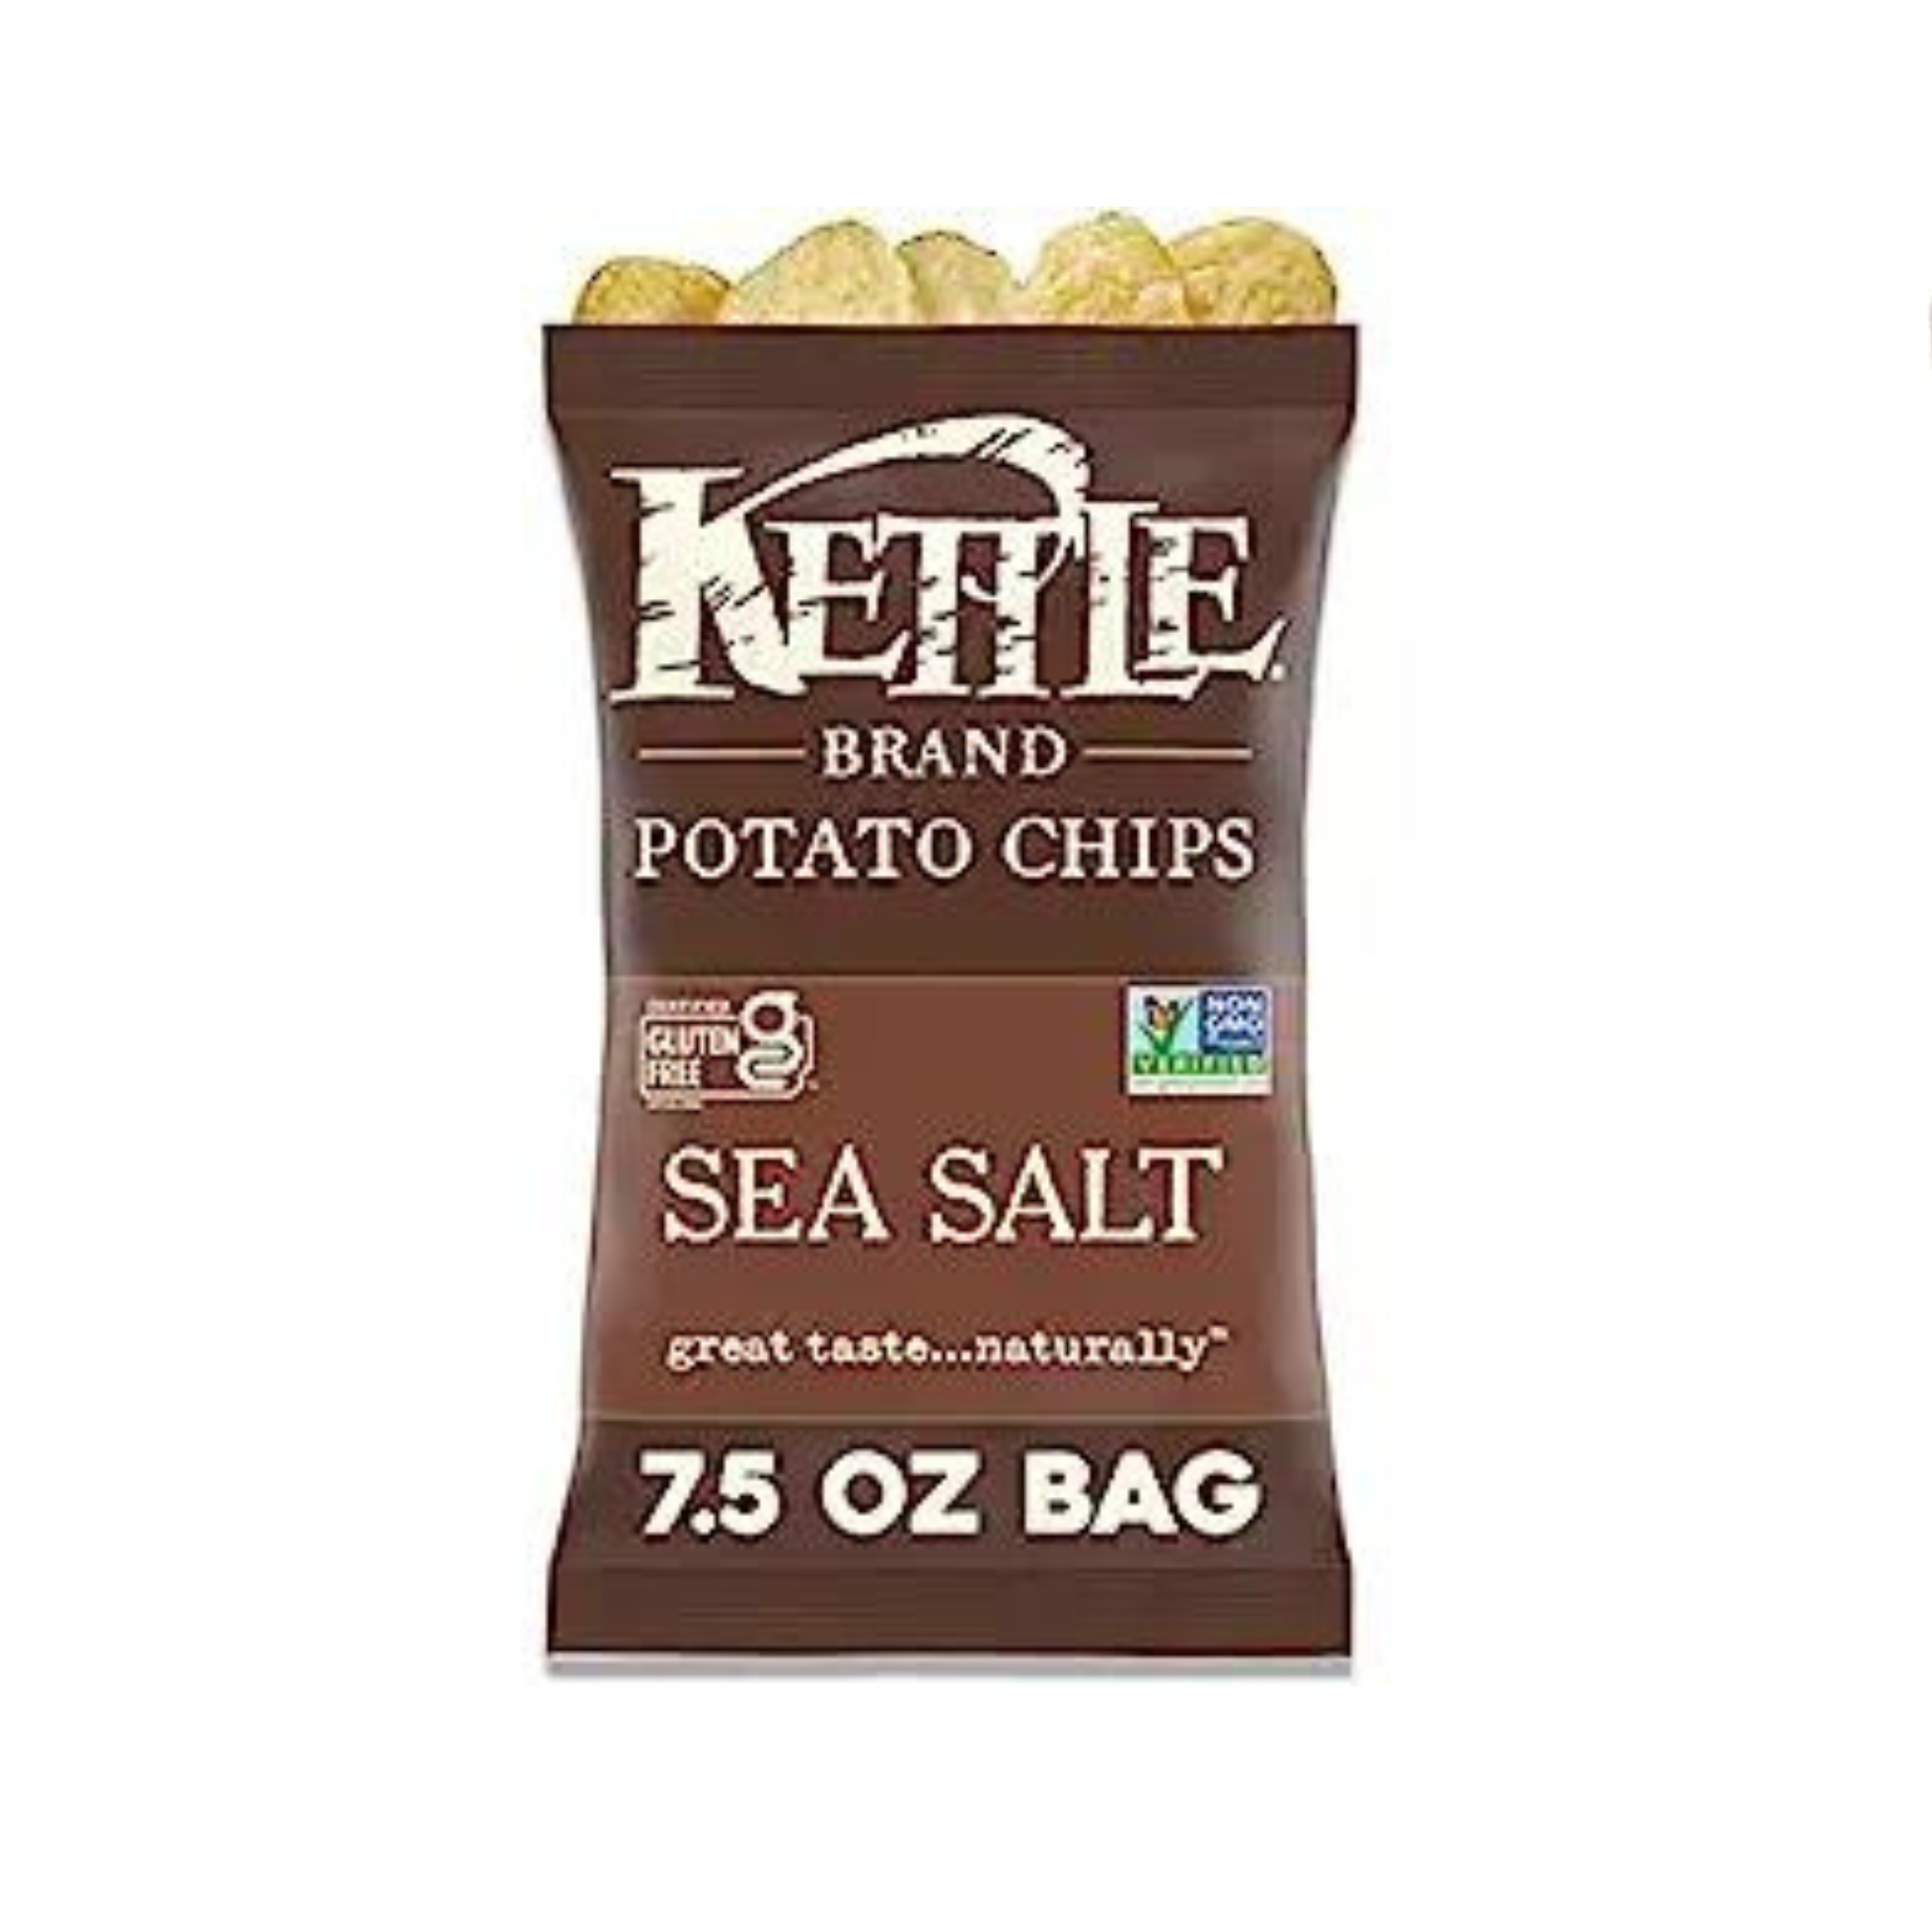 Kettle Brand Potato Chips 7.5 oz Bag (Sea Salt, or Barbeque)